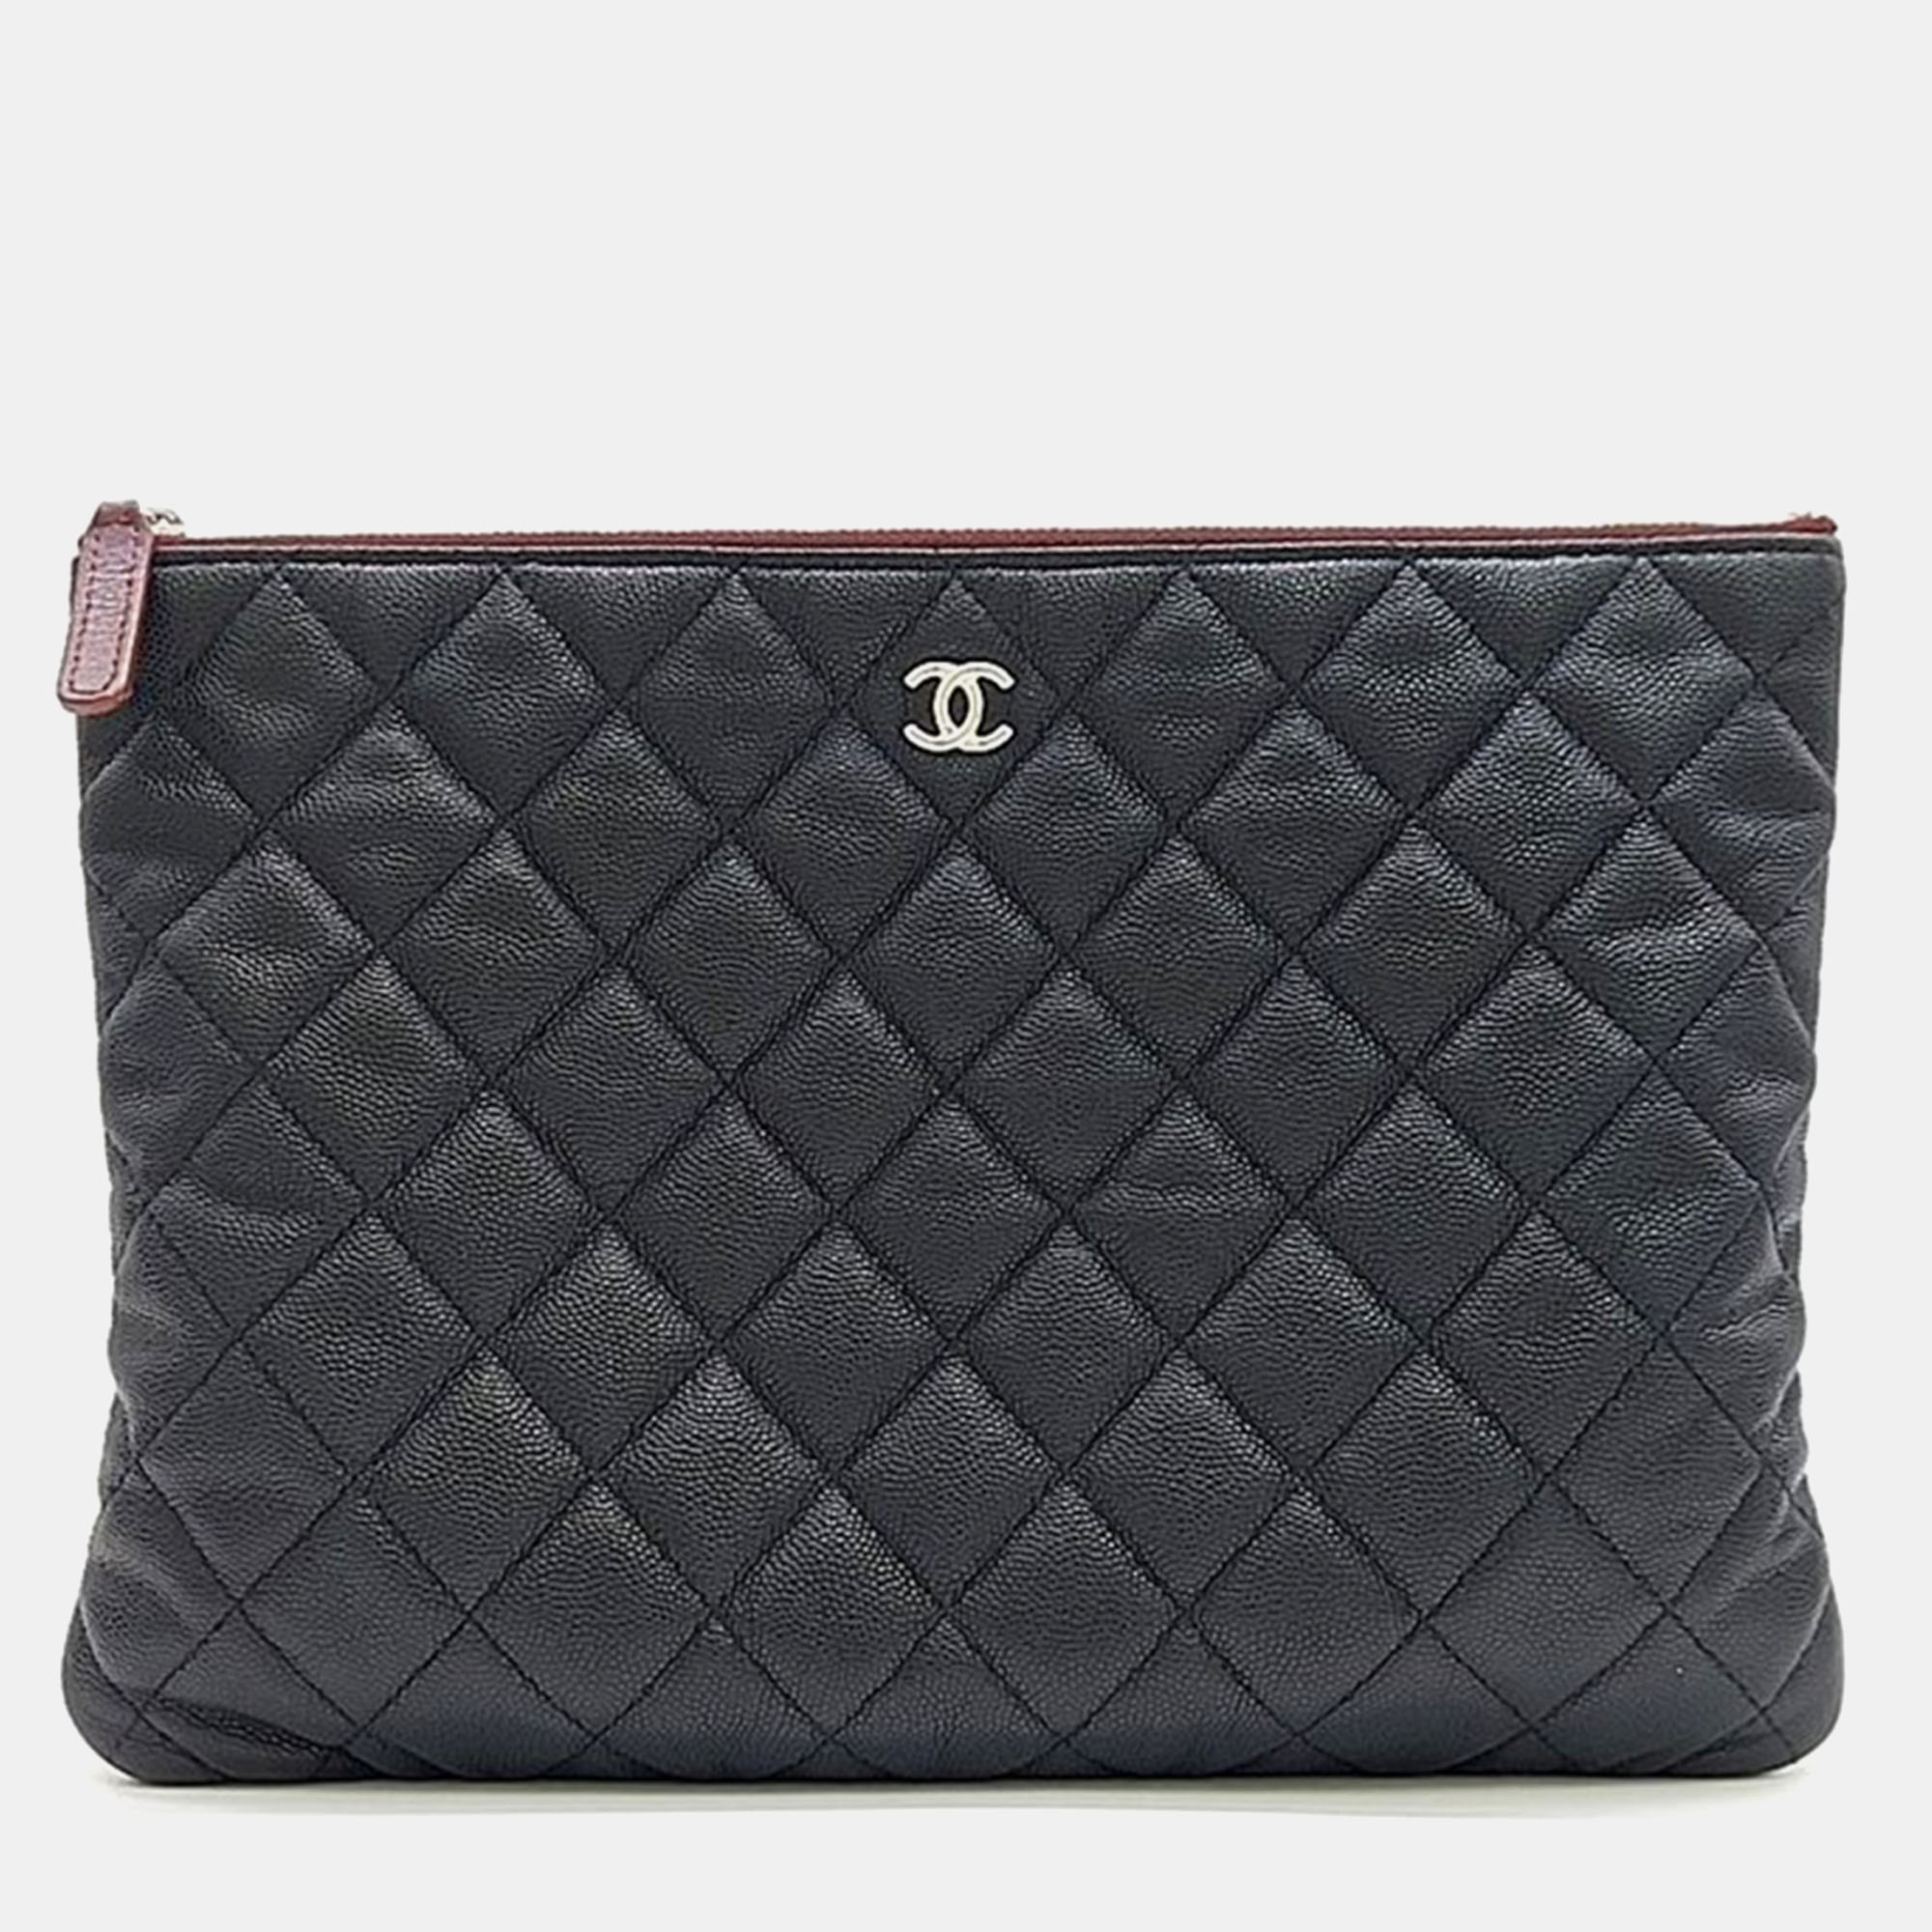 Chanel black caviar leather medium clutch bag